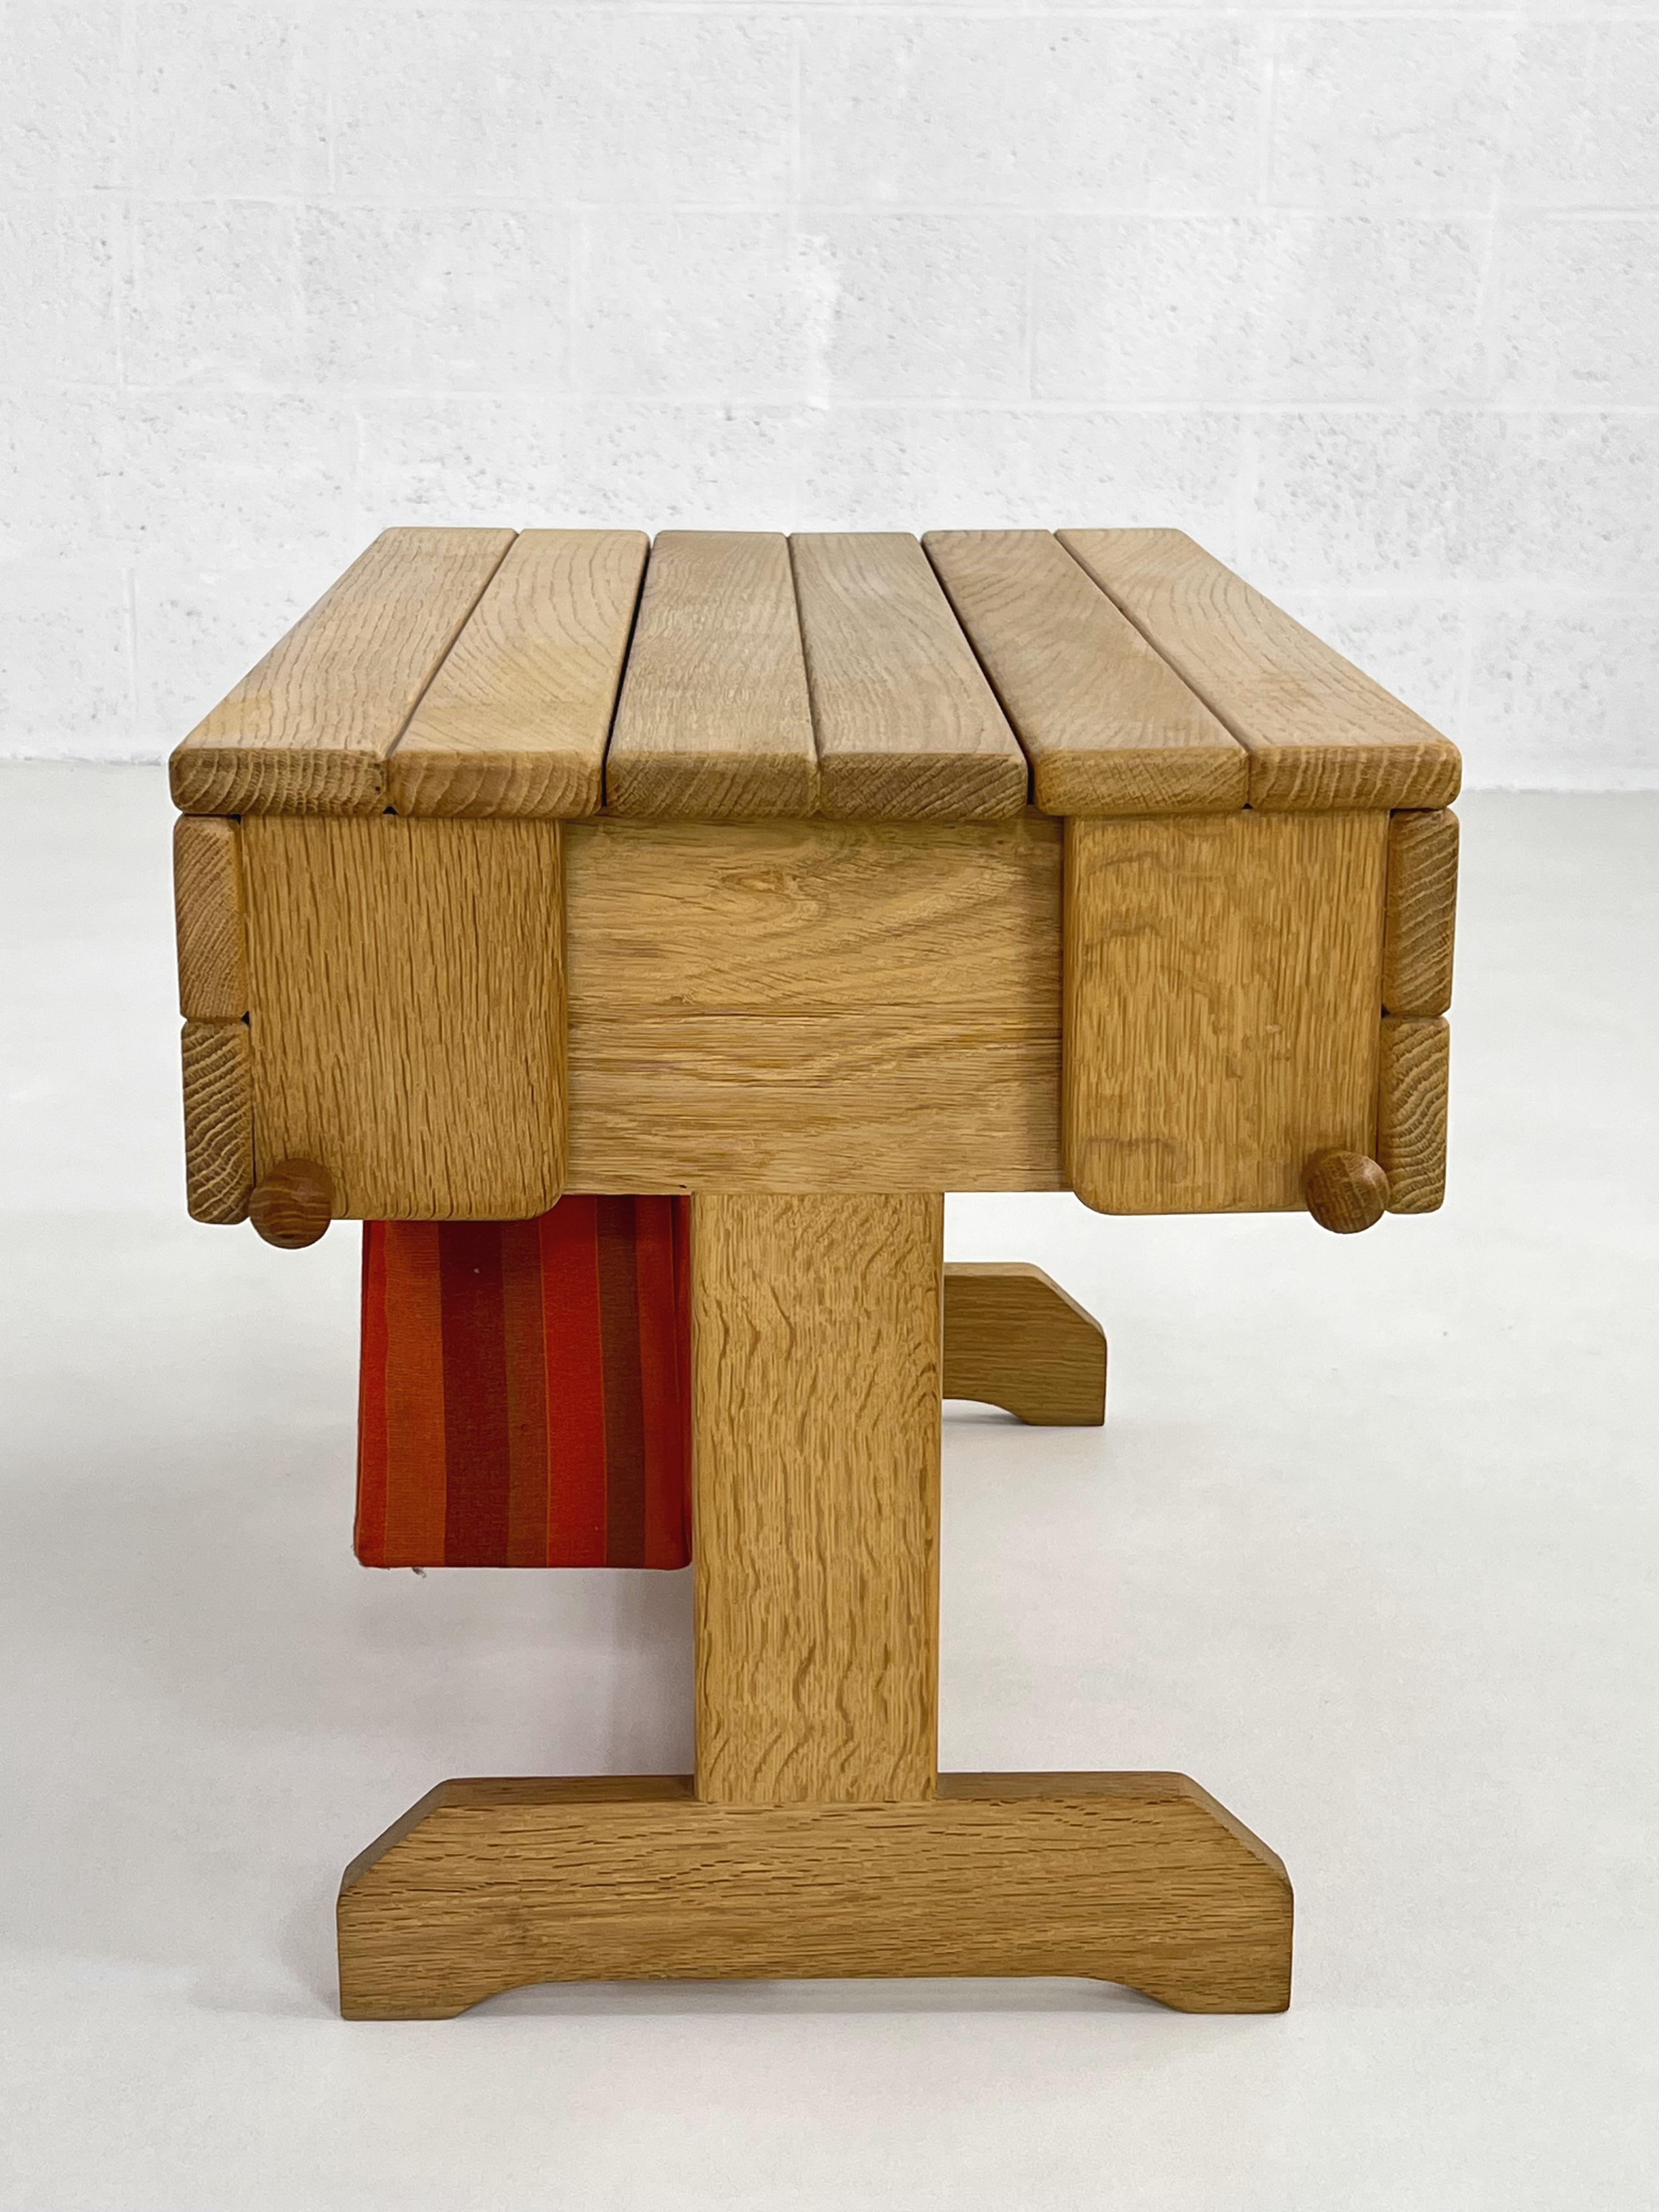 1960s French Guillerme and Chambron Design/One Modular Coffee Table Bar Cabinet : vous pouvez l'utiliser comme petite table basse ou table de cocktail et avec son système de côtés coulissants et rabattables vous pouvez l'utiliser très facilement